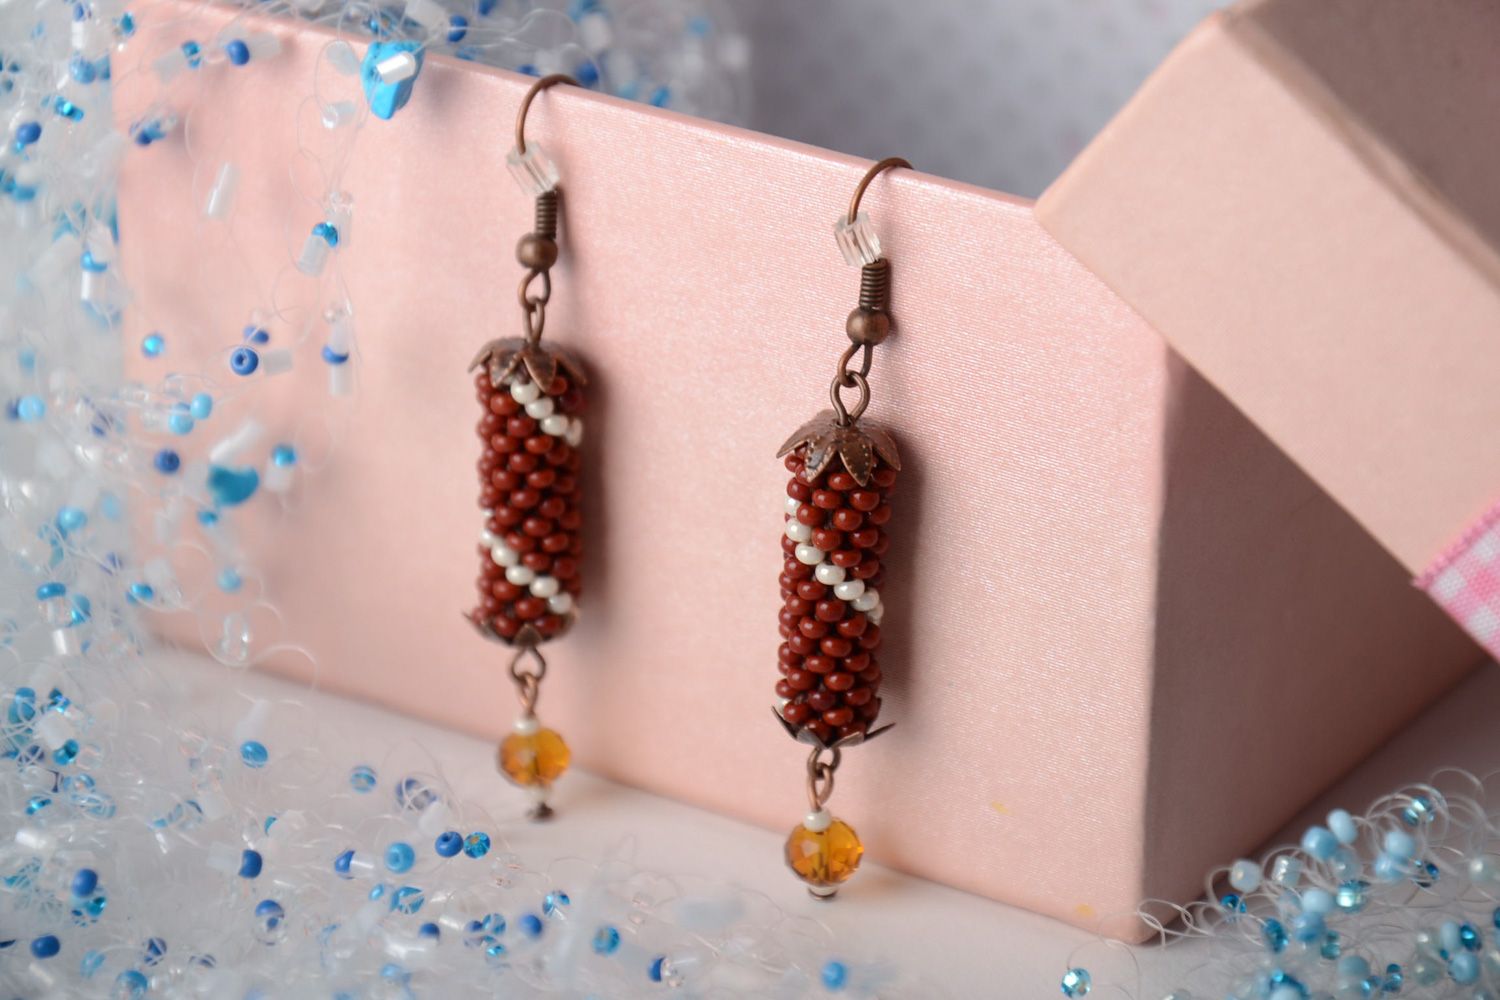 Handmade designer dangle earrings crocheted of beads in autumn color palette photo 1